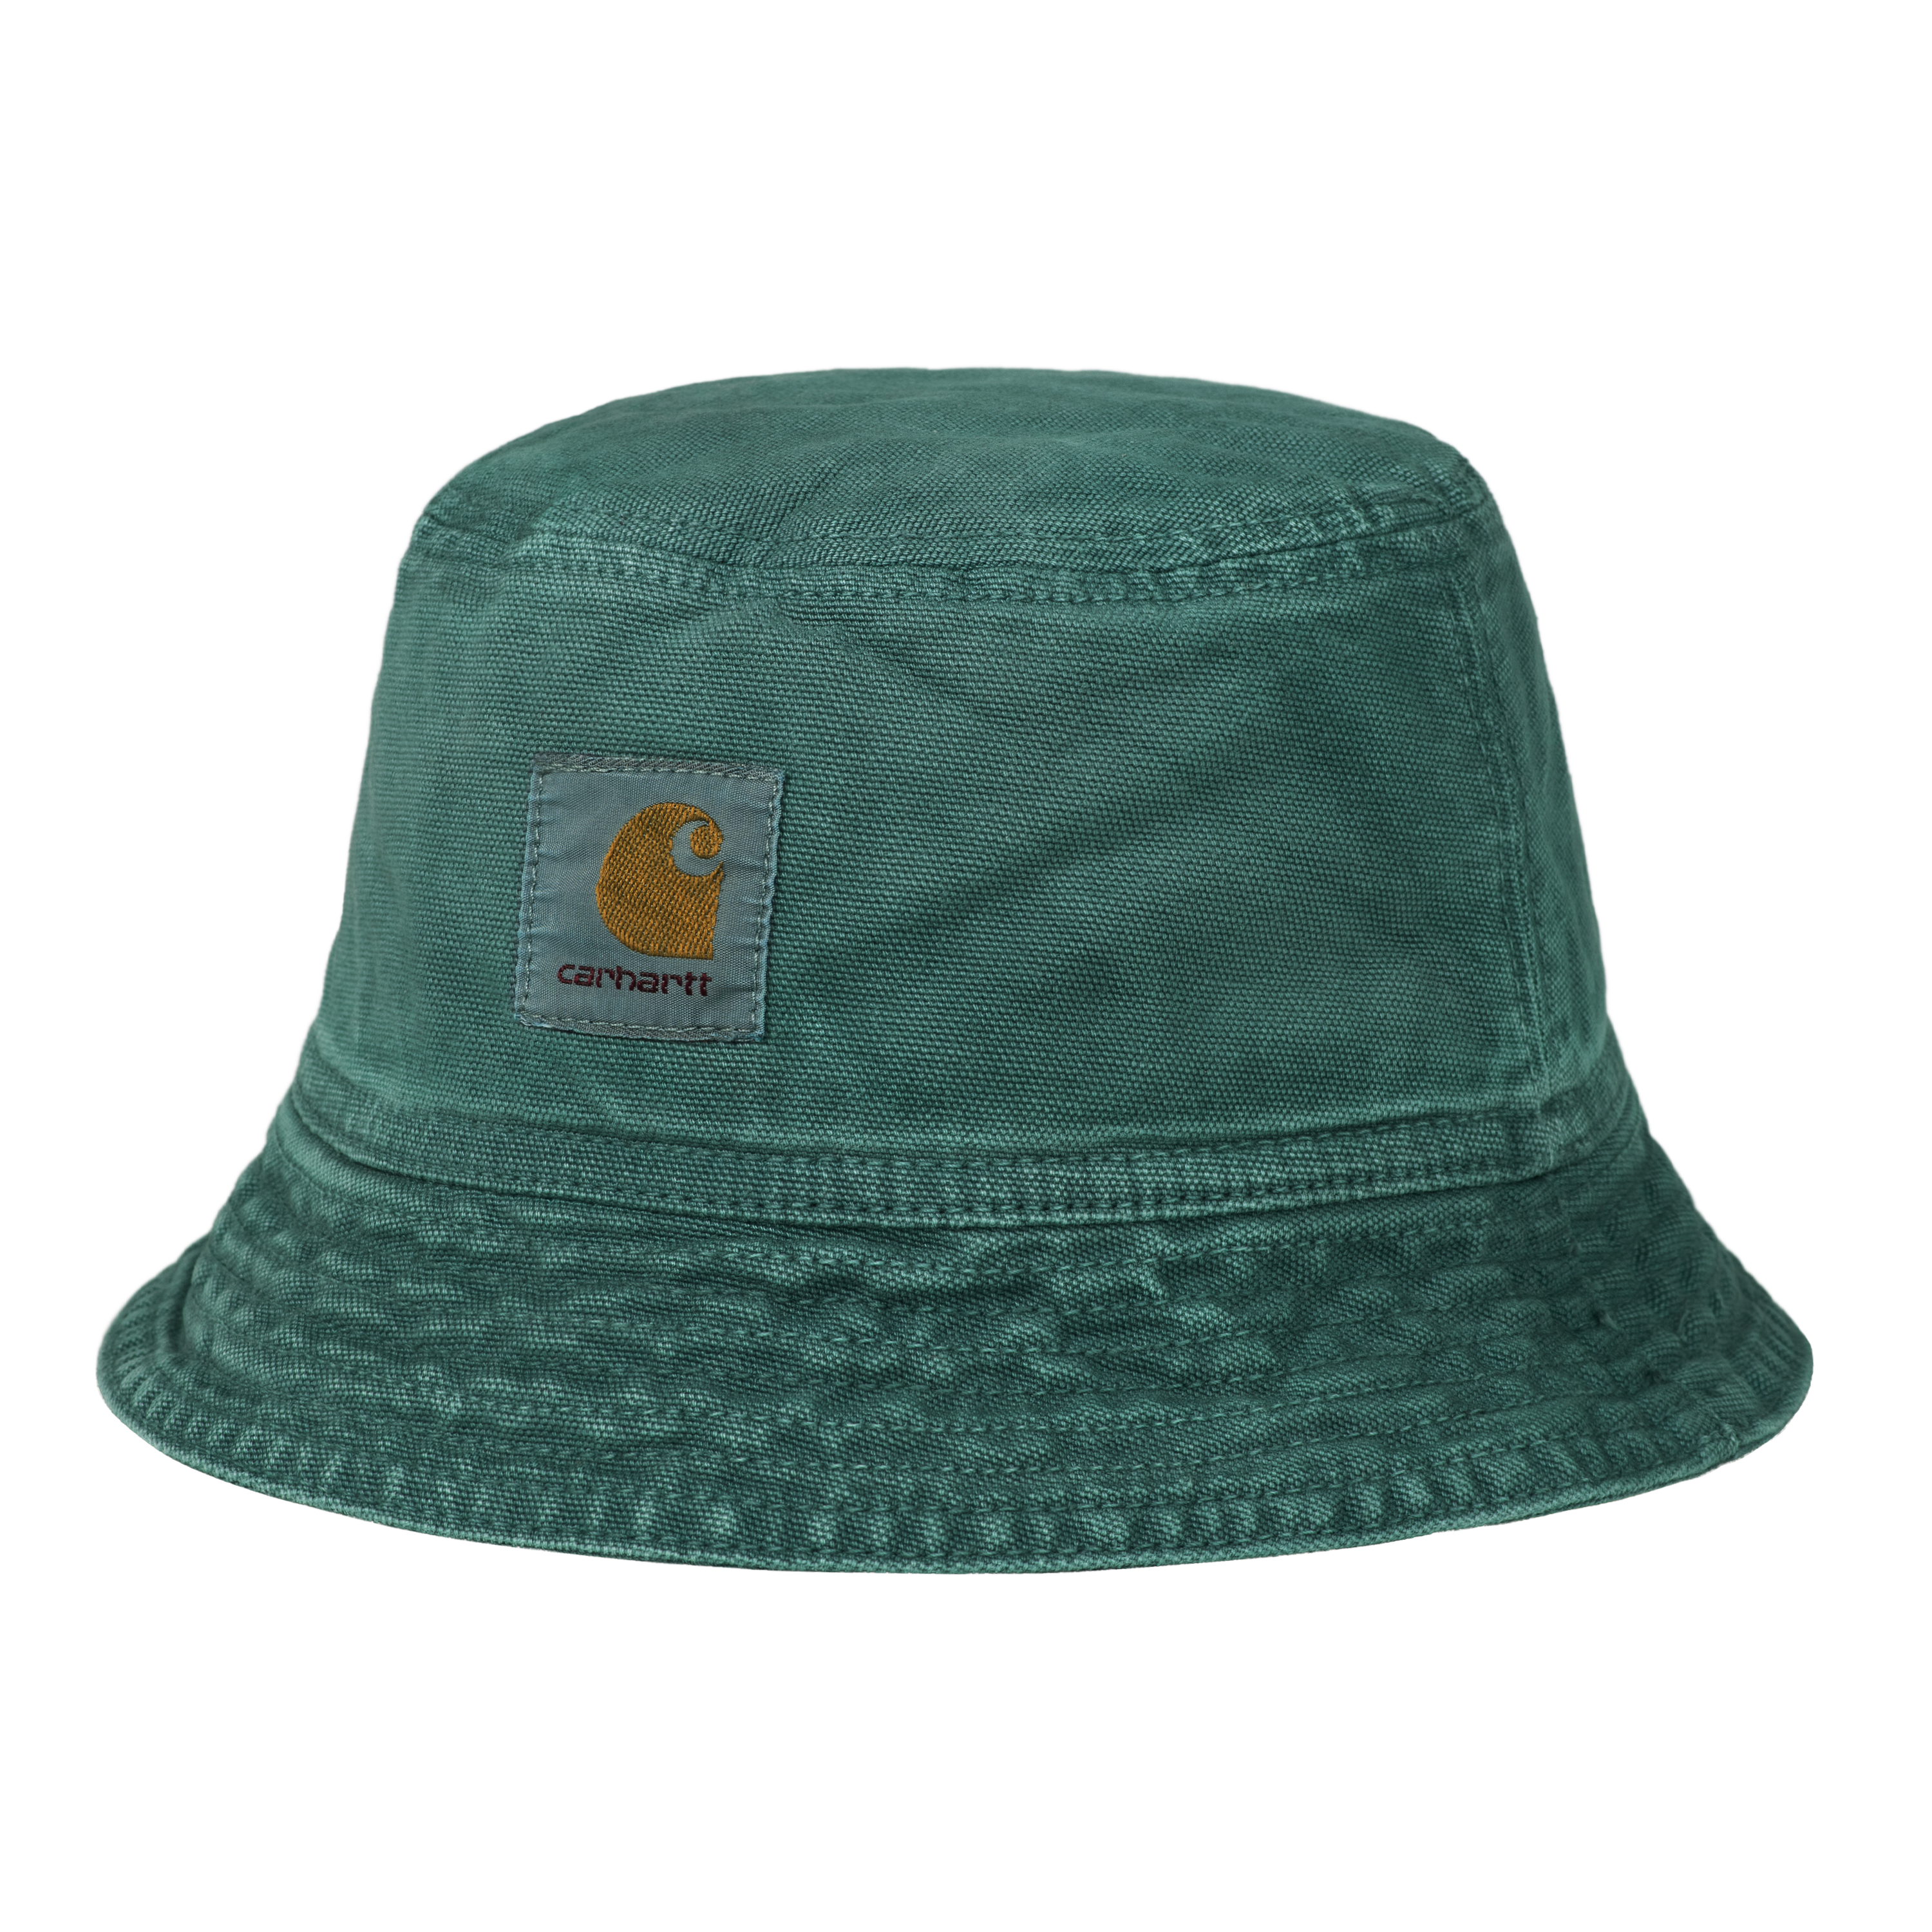 Carhartt WIP Accessories Caps & Bucket Hats | Carhartt WIP